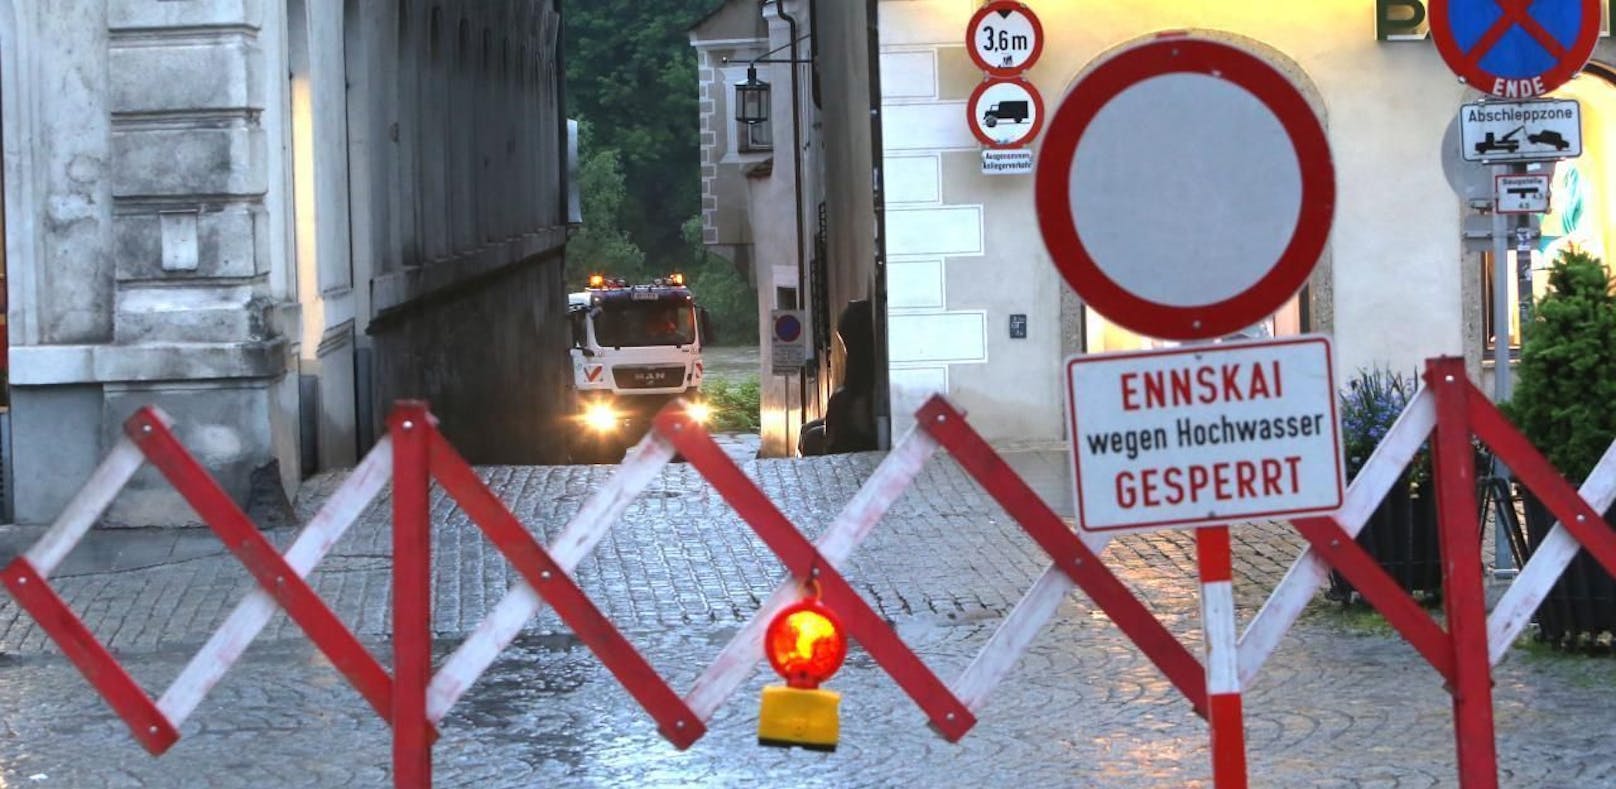 Hochwasseralarm im Bereich der Steyr. Der Ennskai in Steyr wurde gesperrt.